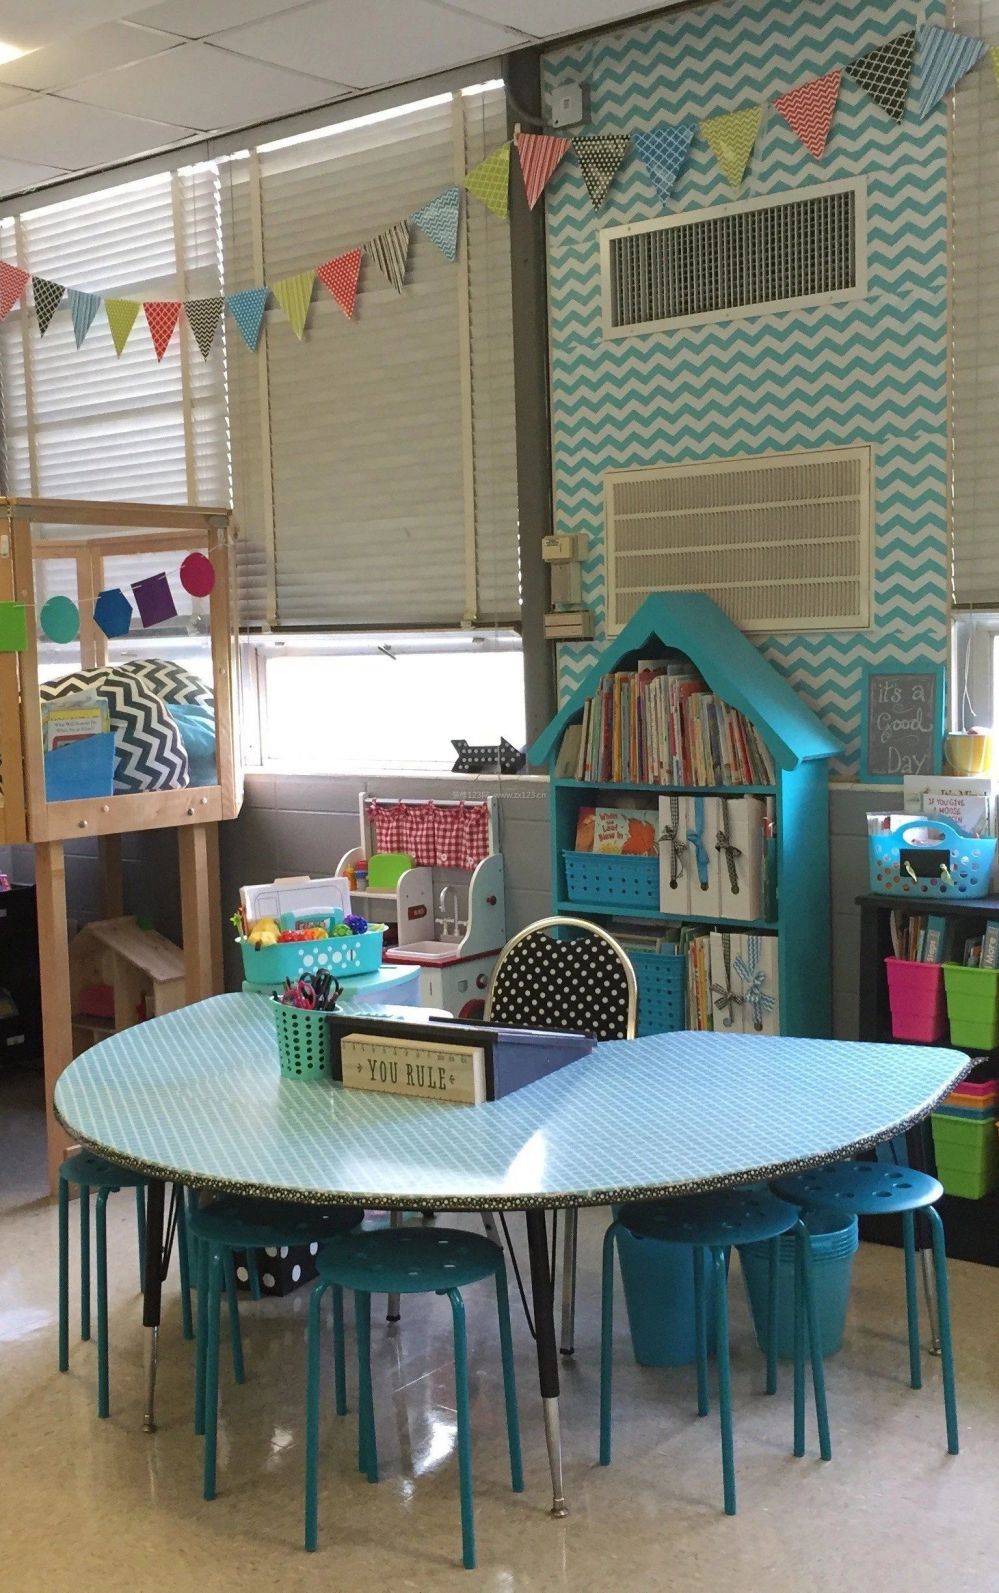 现代风格室内幼儿园教室效果图